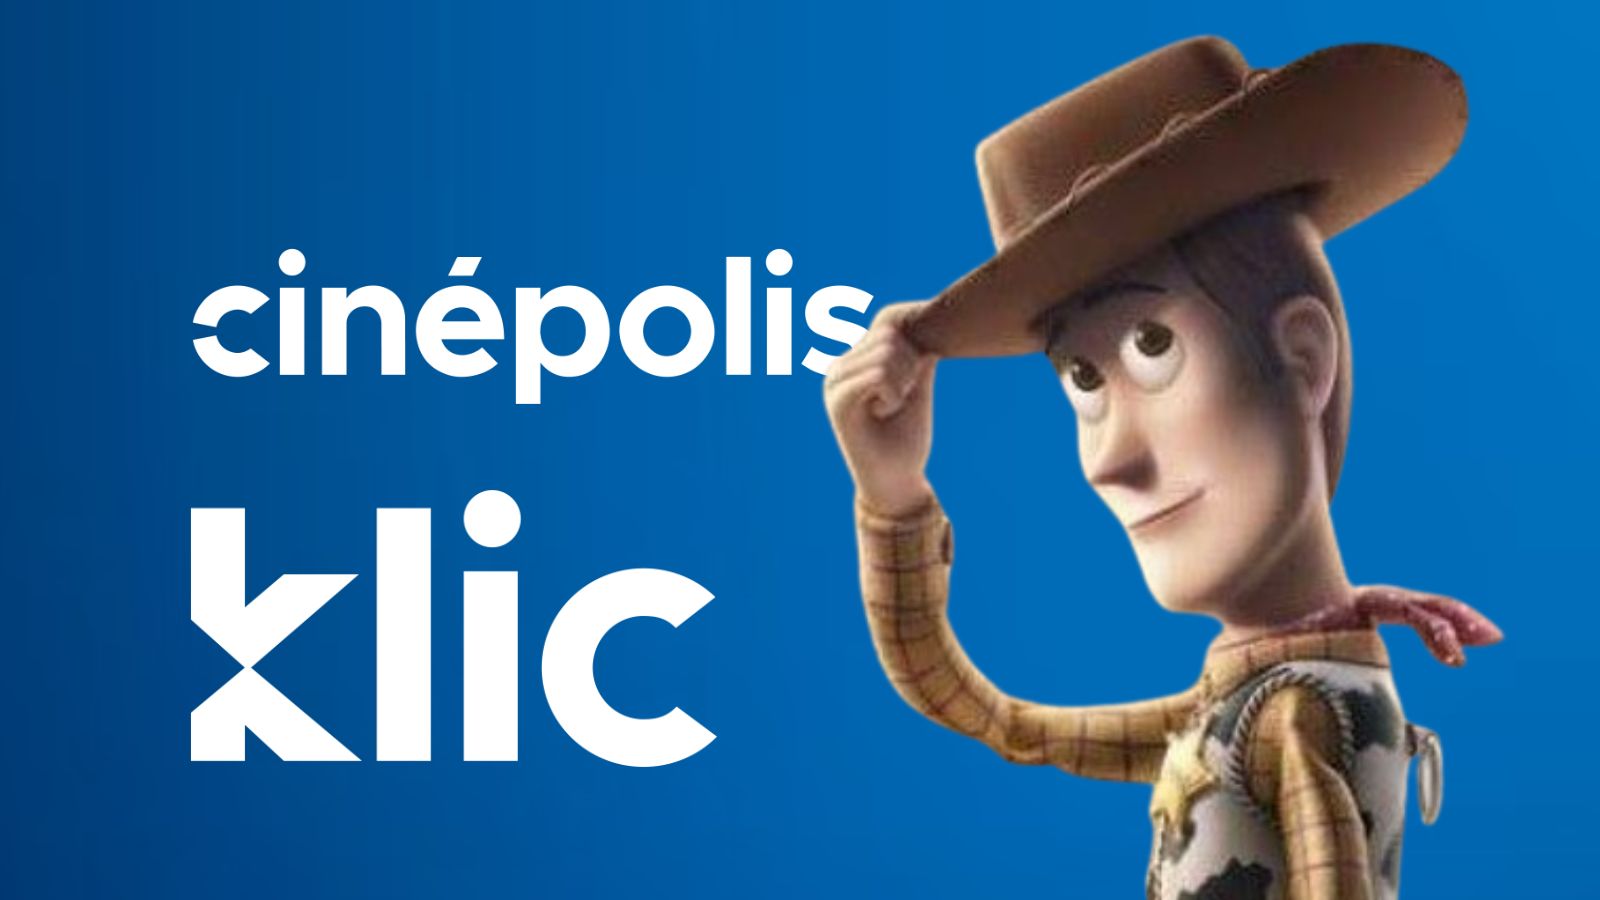 Cinepolis Klic dejará de operar en mayo Streaming